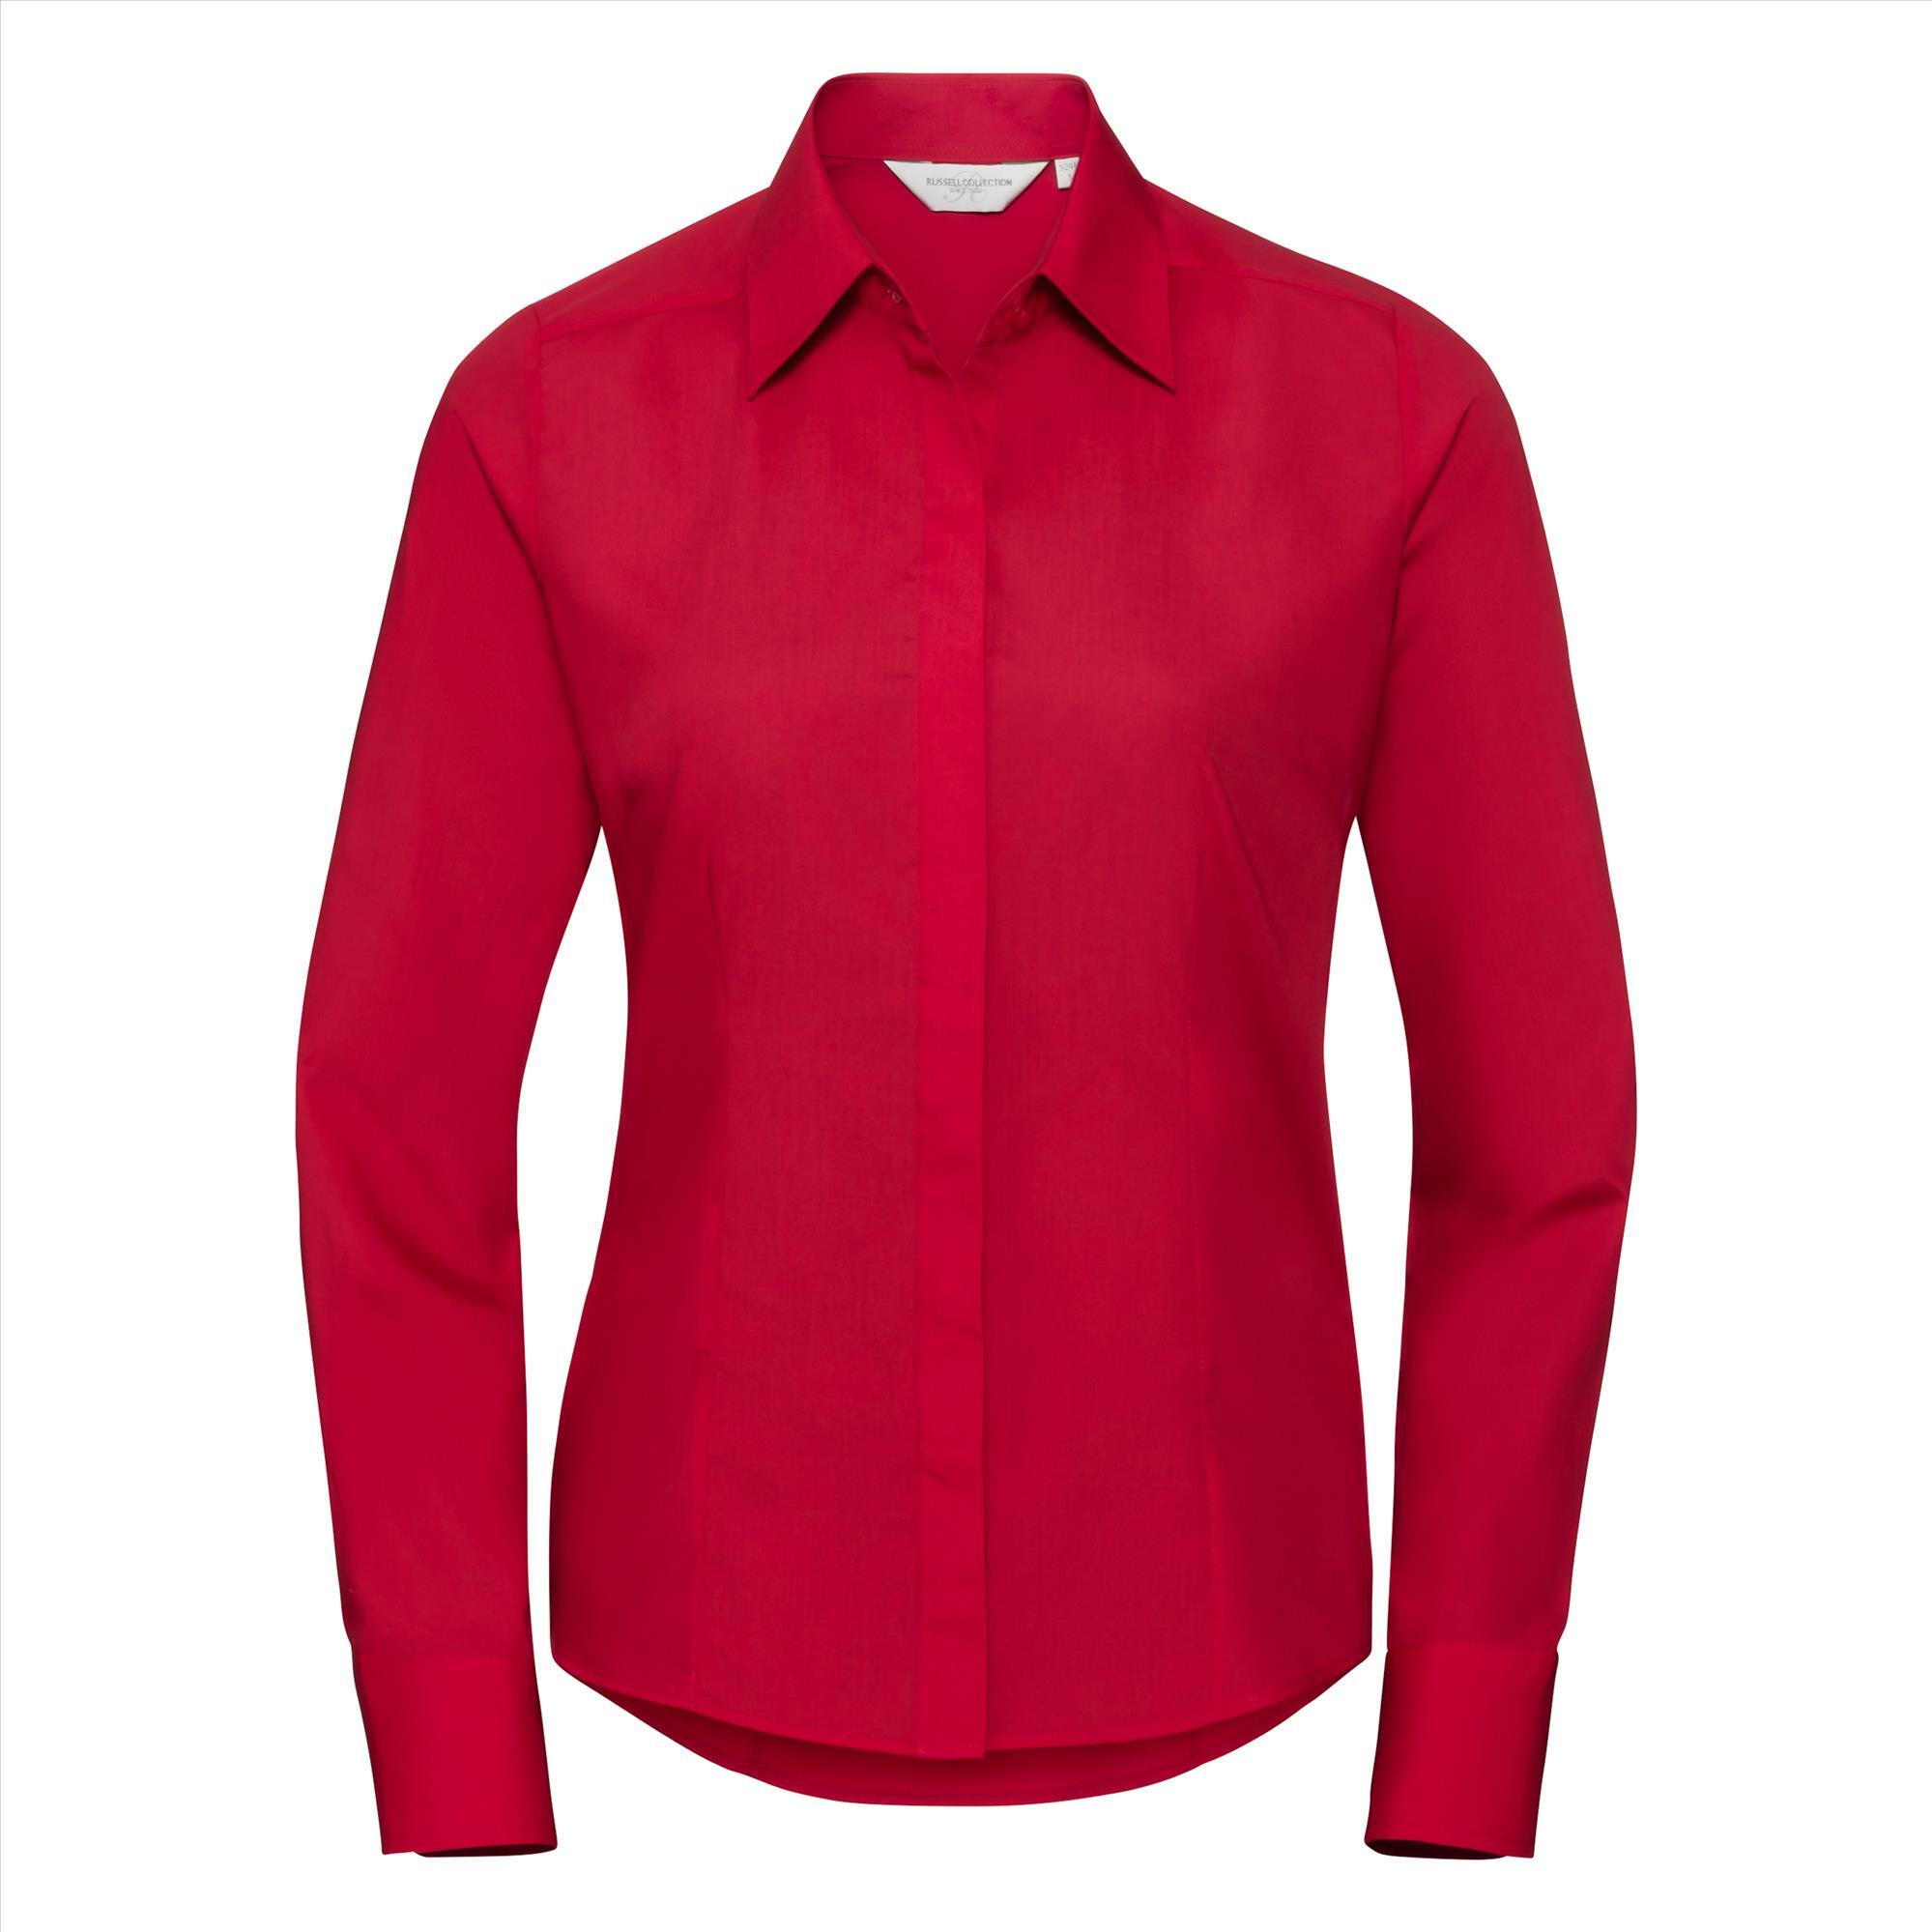 Dames blouse rood te bedrukken te personaliseren met bedrijfslogo